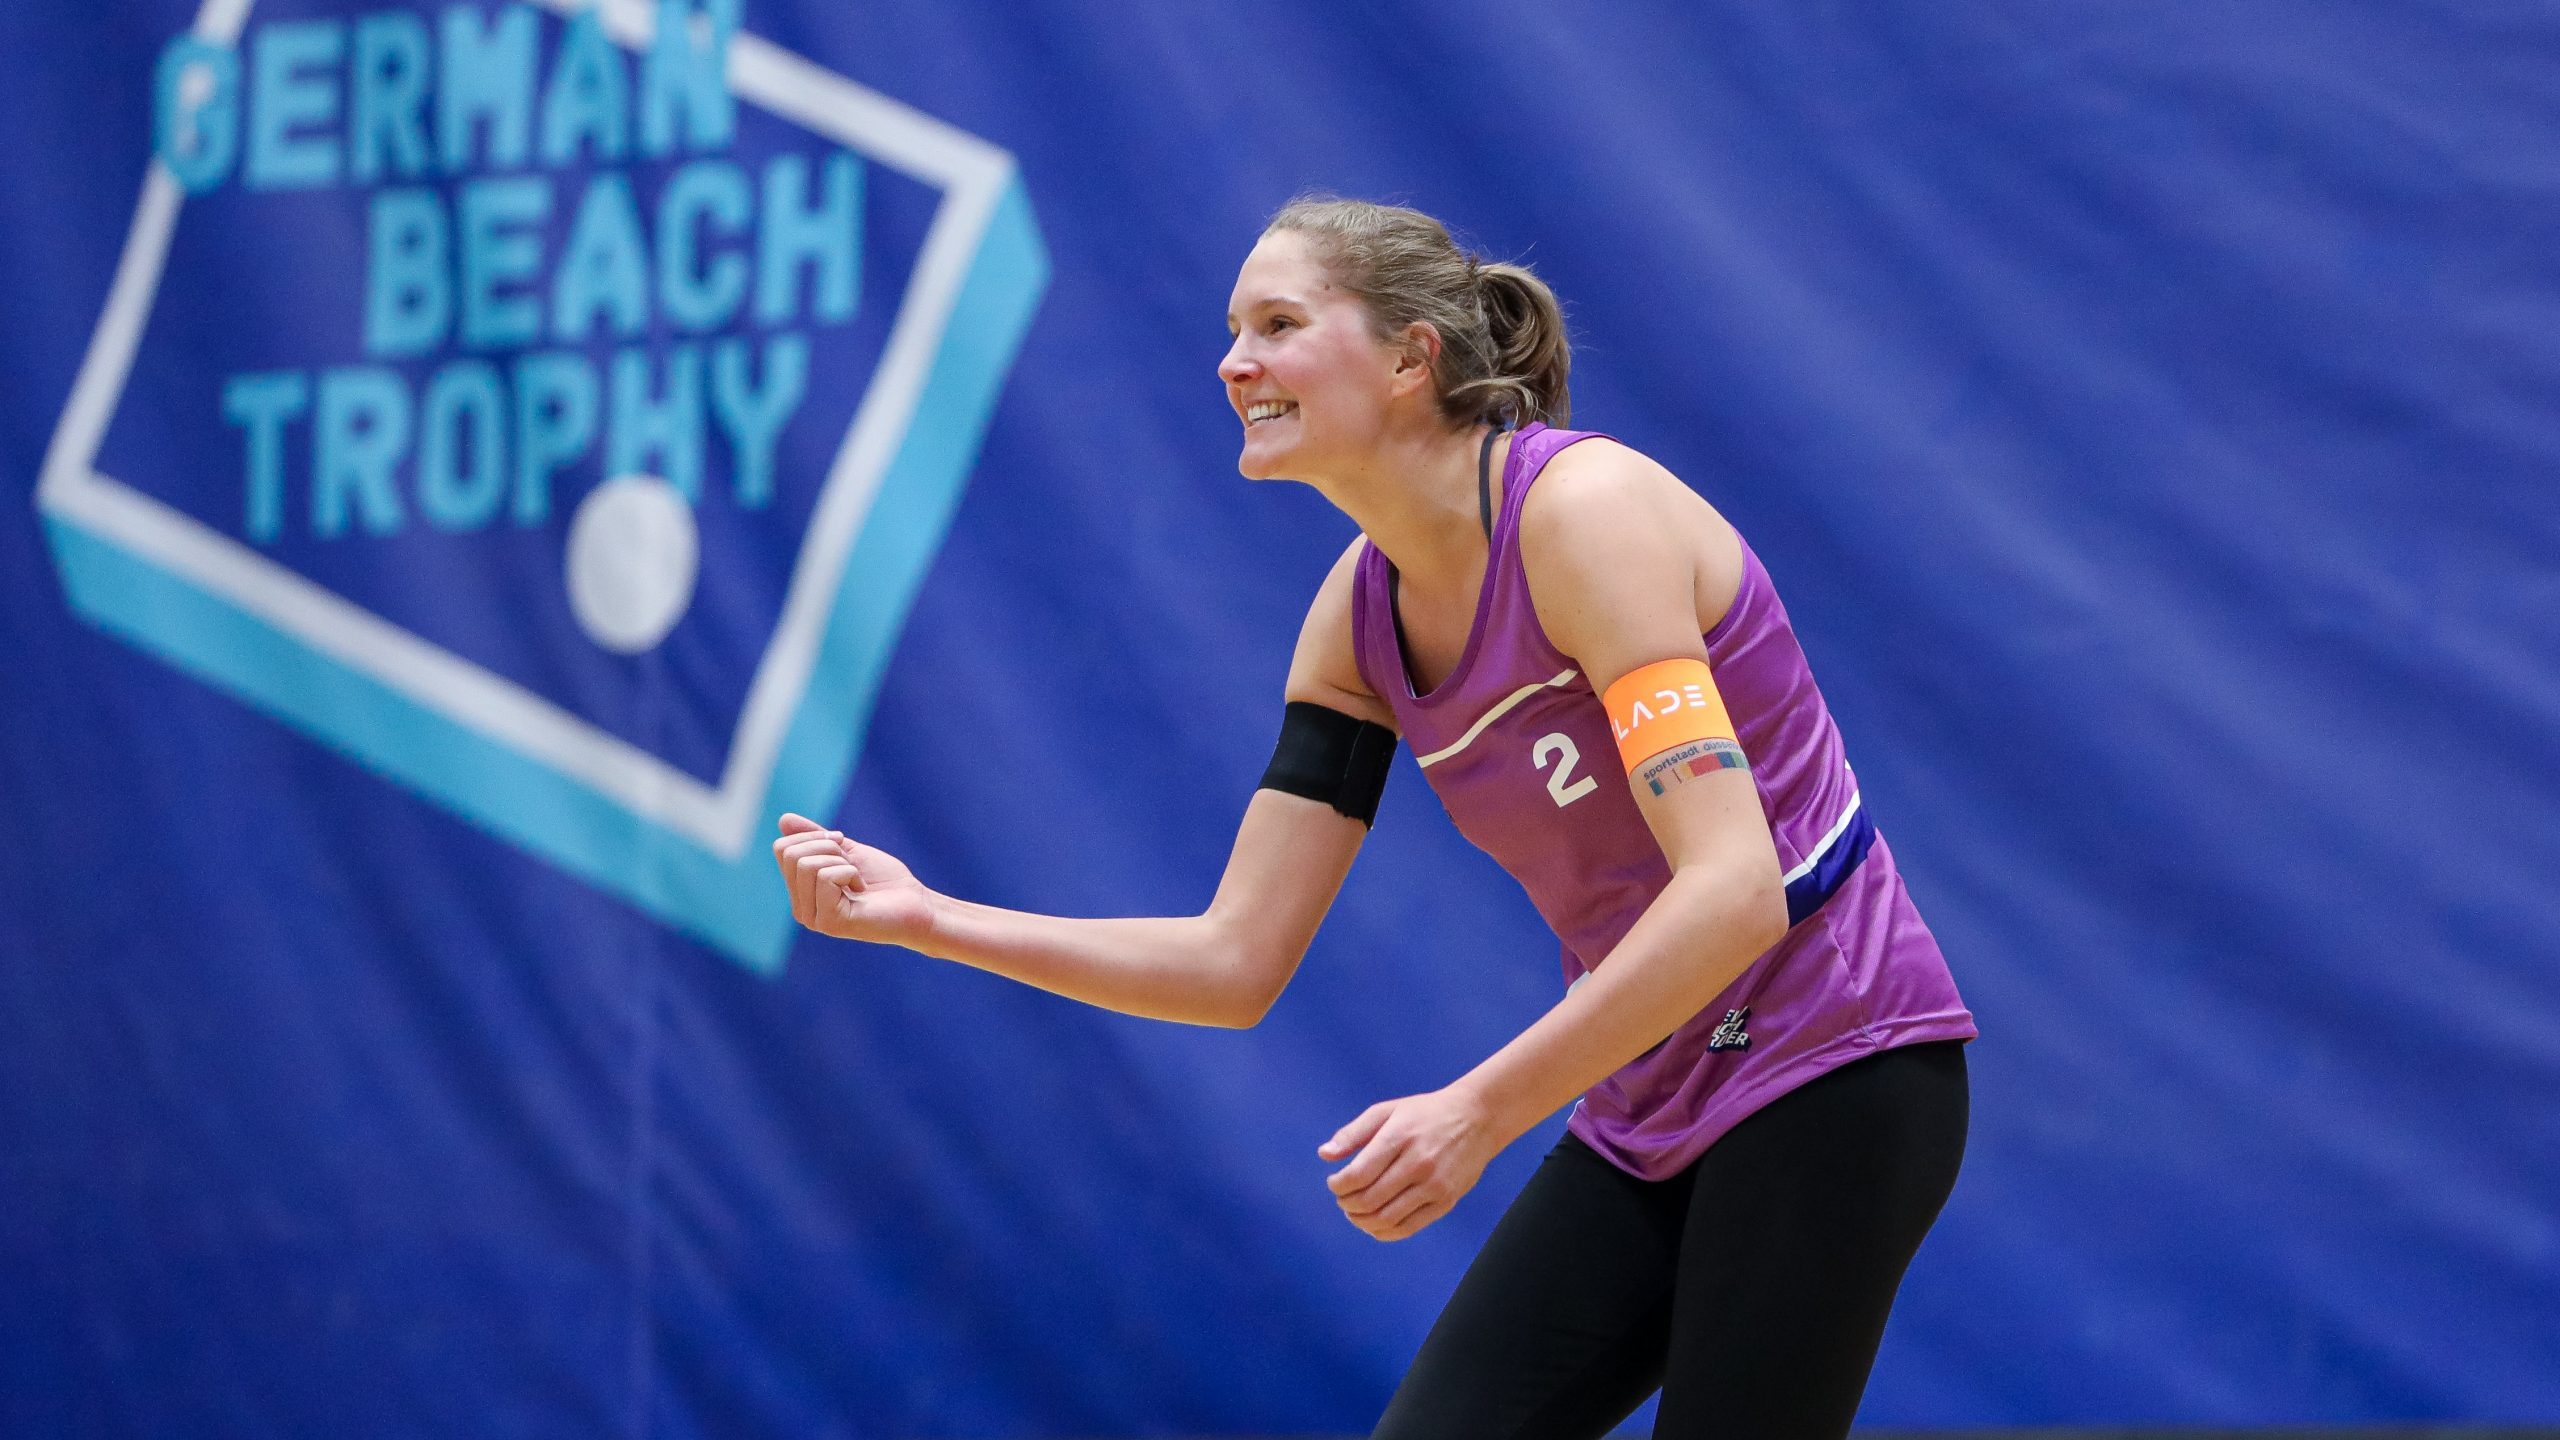 Sarah Schulz gewinnt Silber in Doha*Beachvolleyballerin wird erst im Finale gestoppt